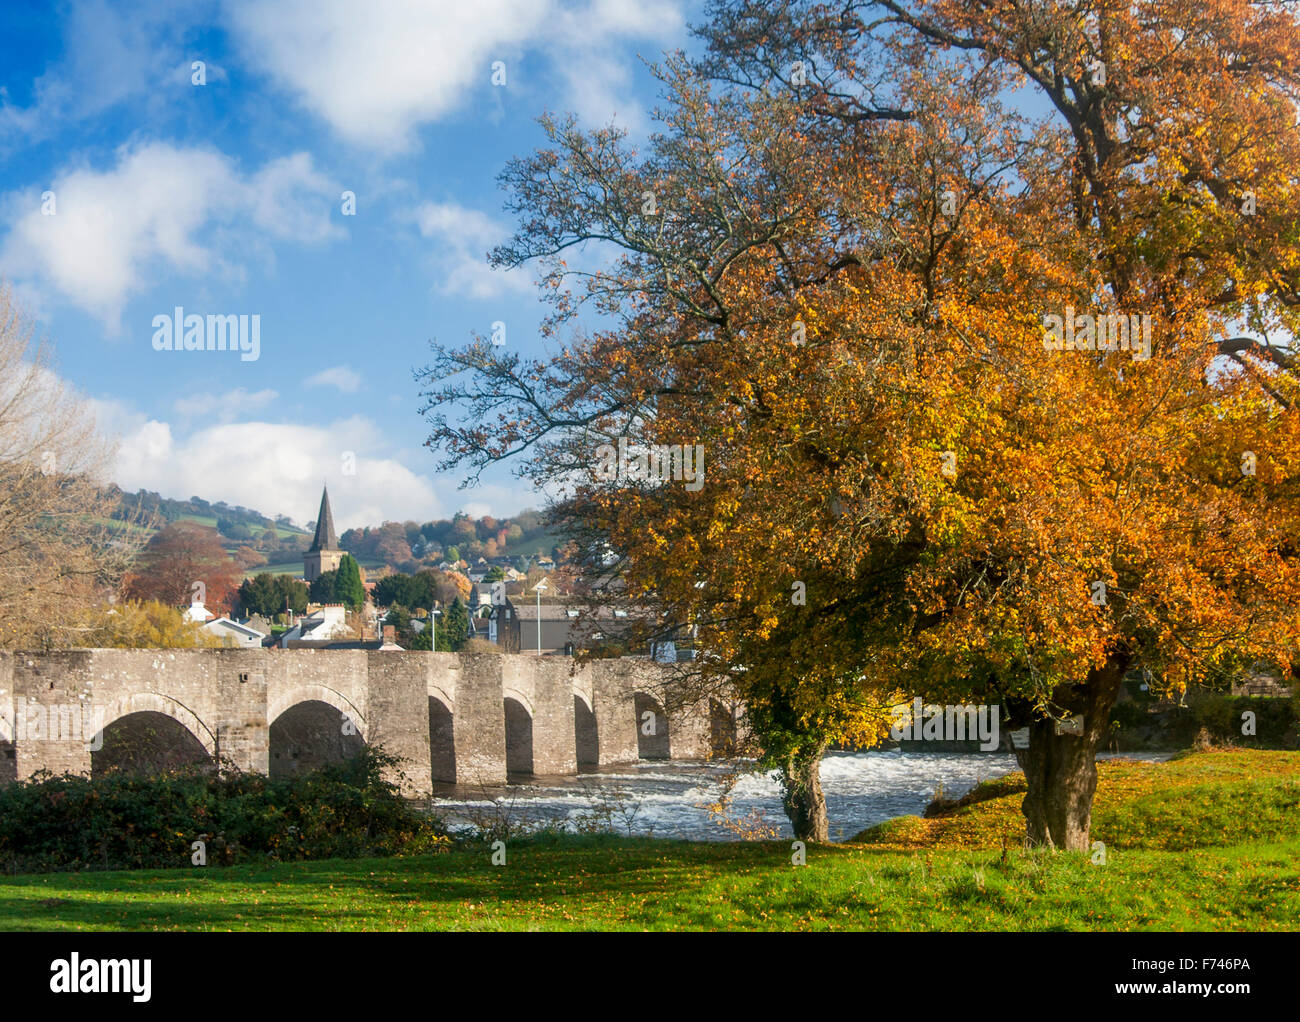 Crickhowell pont rivière Usk automne Powys Pays de Galles UK Banque D'Images